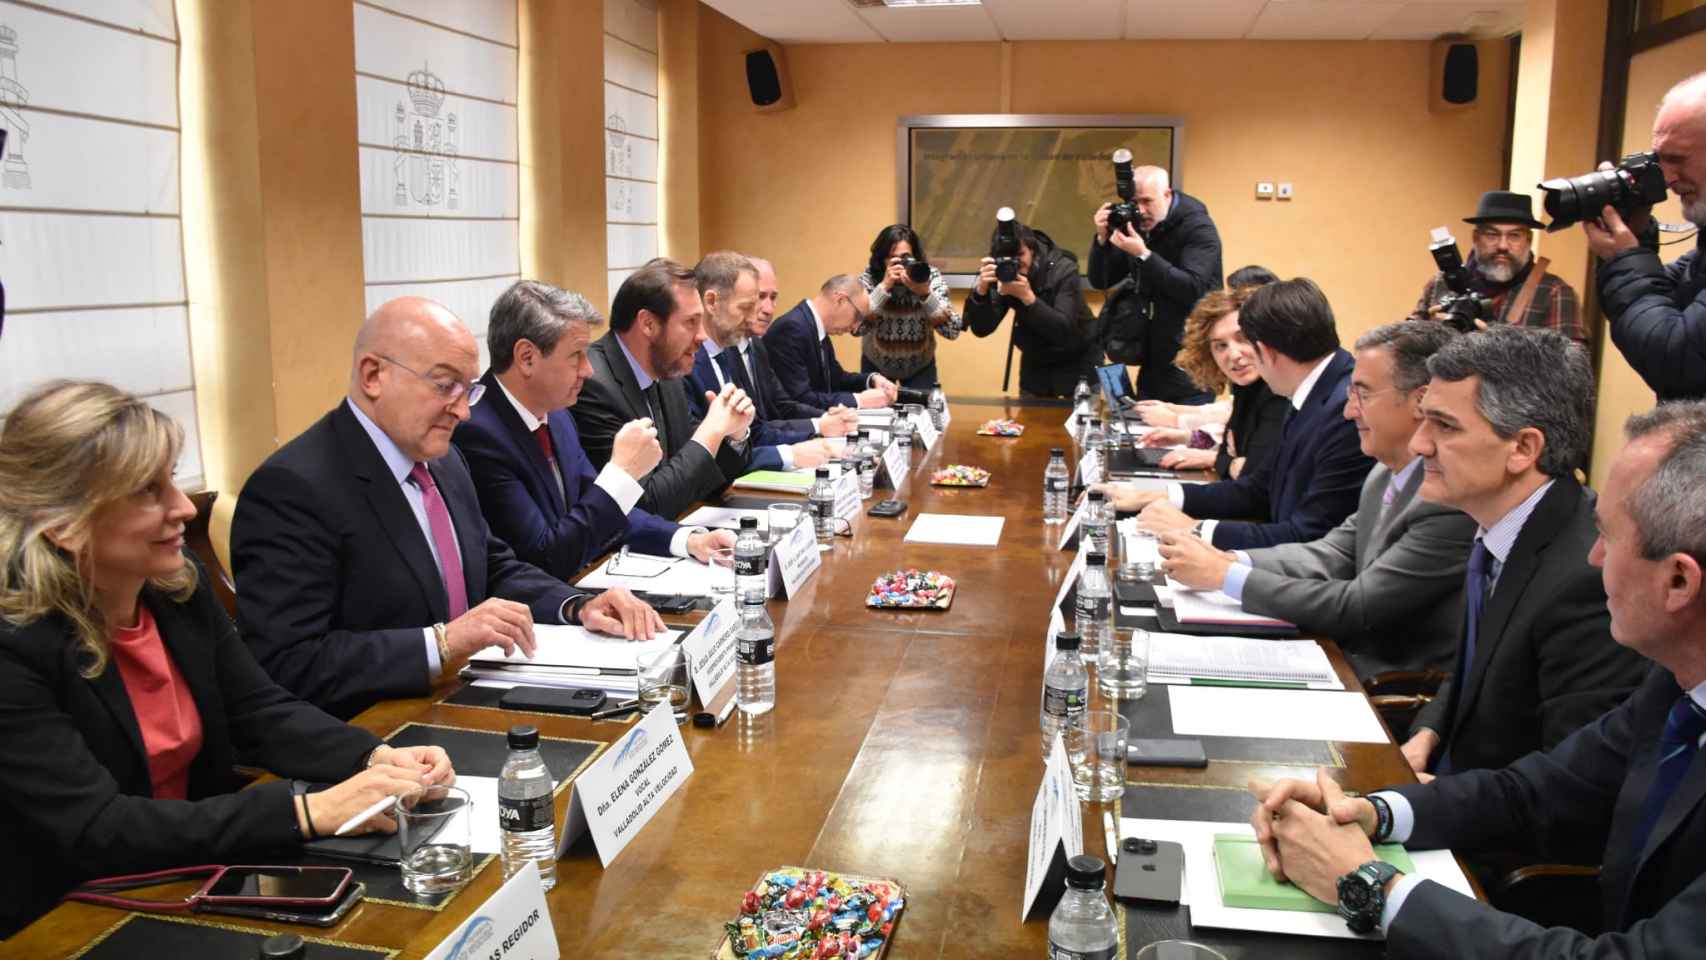 Reunión de la Sociedad Valladolid Alta Velocidad, con la presencia del ministro Óscar Puente